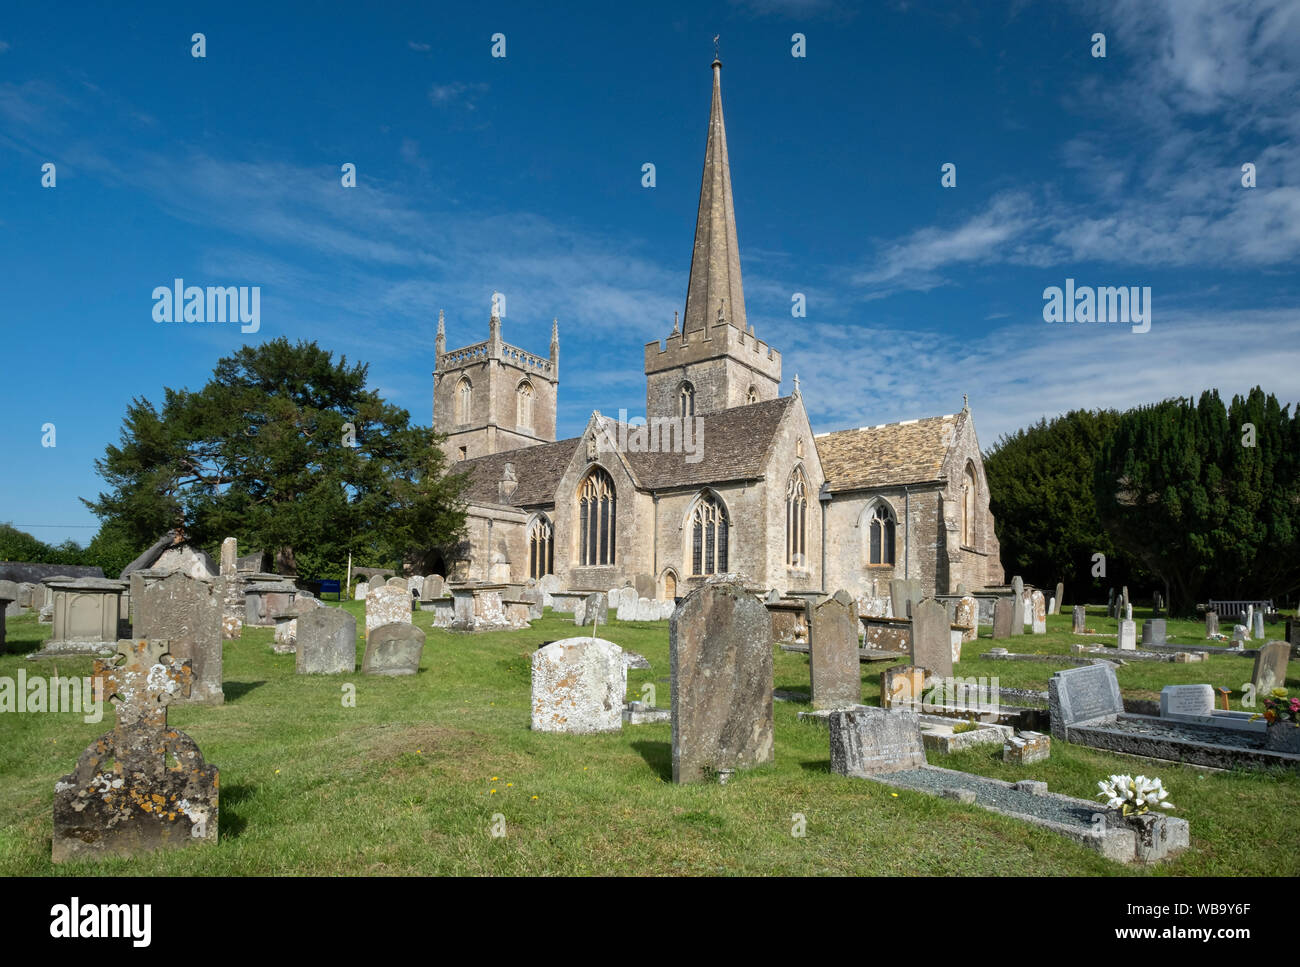 St Mary's Parish Church, Purton, près de Swindon, Wiltshire, England, UK Banque D'Images